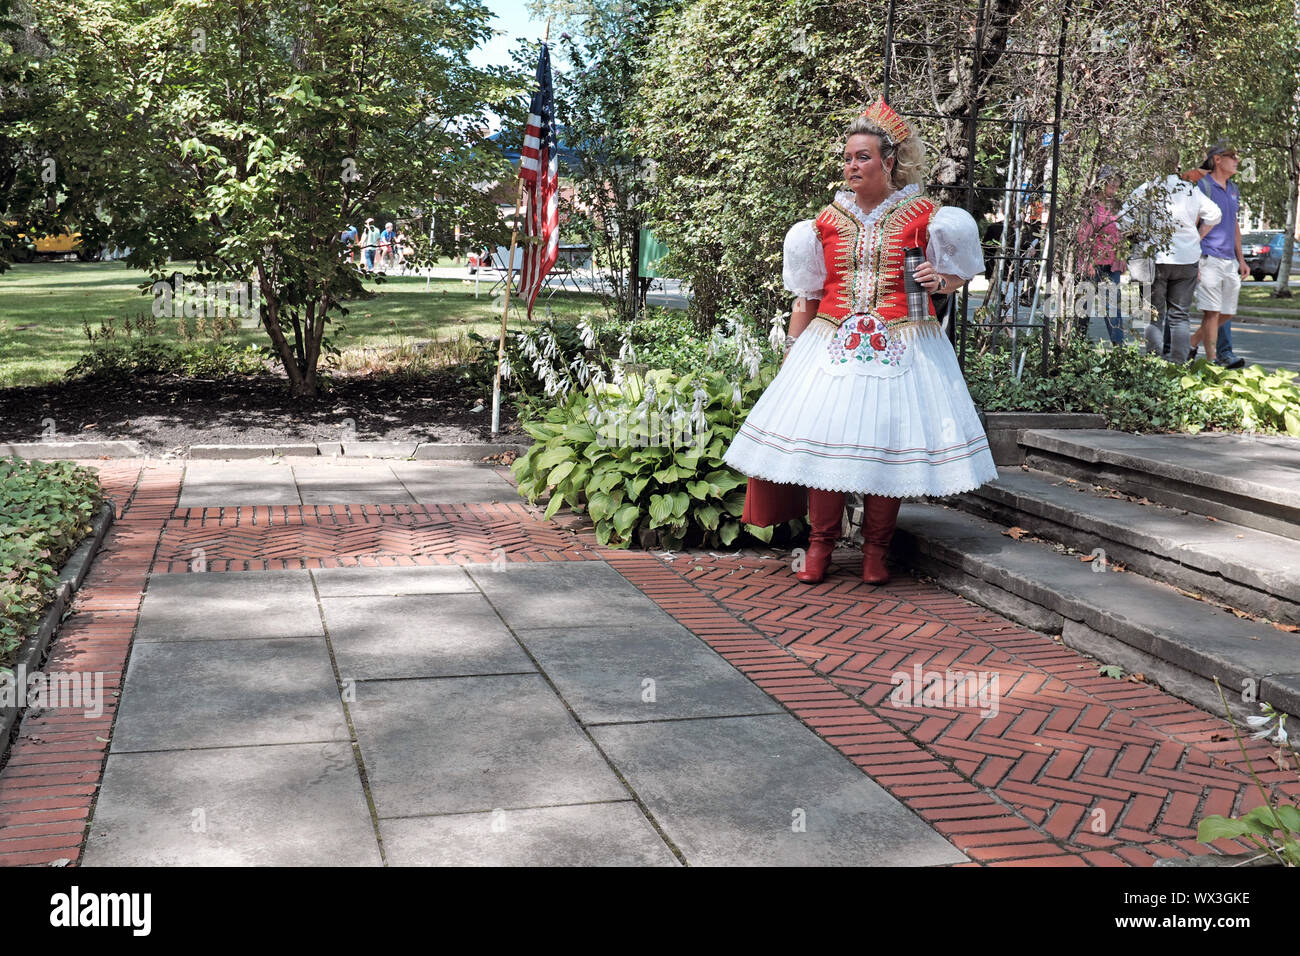 Femme dans les vestiaires traditionnels hongrois dans les jardins hongrois, l'un des jardins culturels du Rockefeller Park de Cleveland, Ohio, États-Unis. Banque D'Images